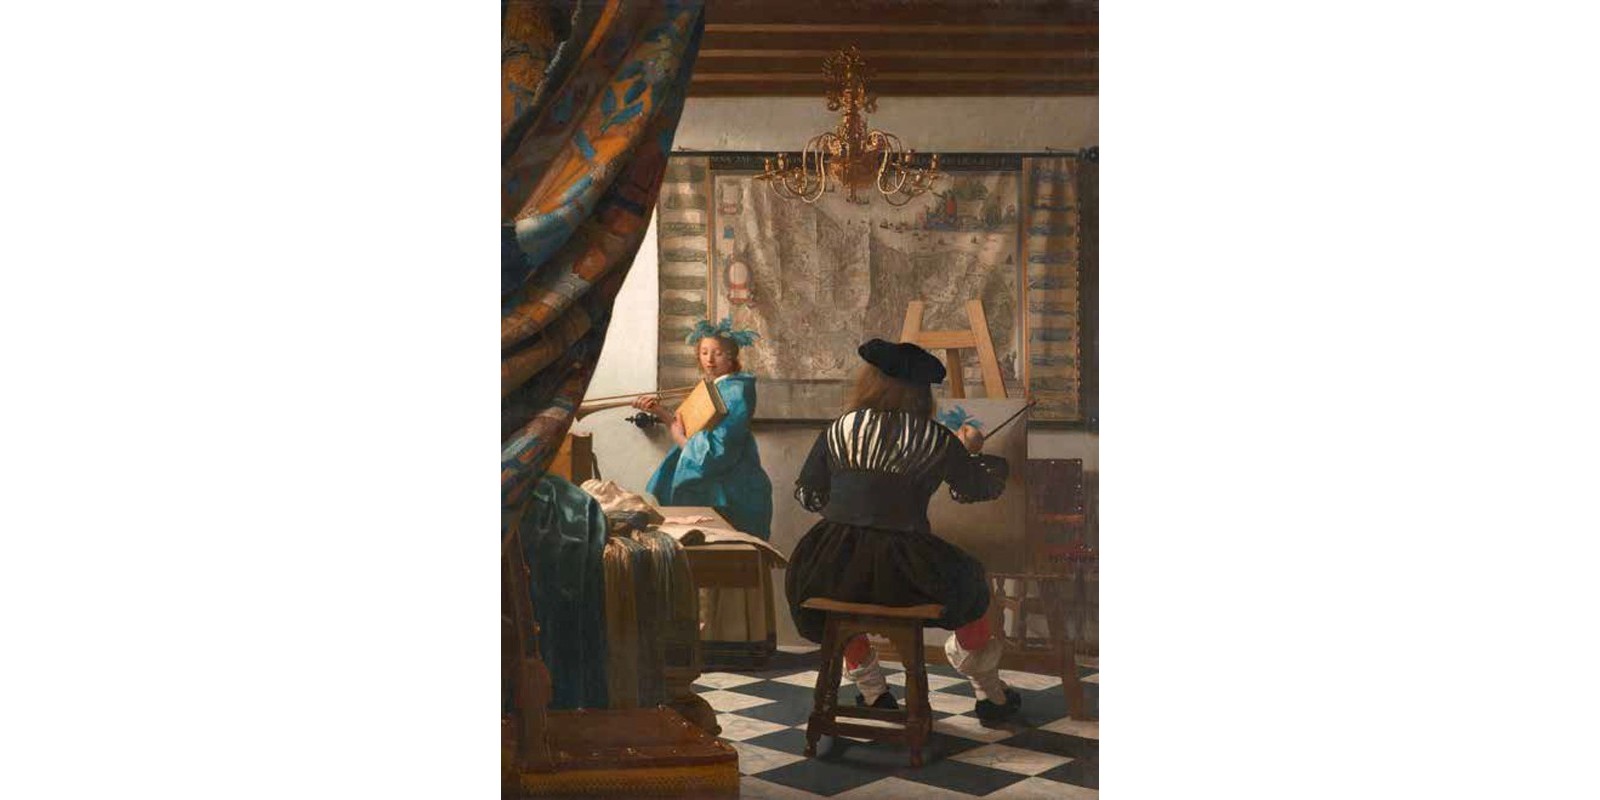 Jan Vermeer - The Art of Painting (detail)